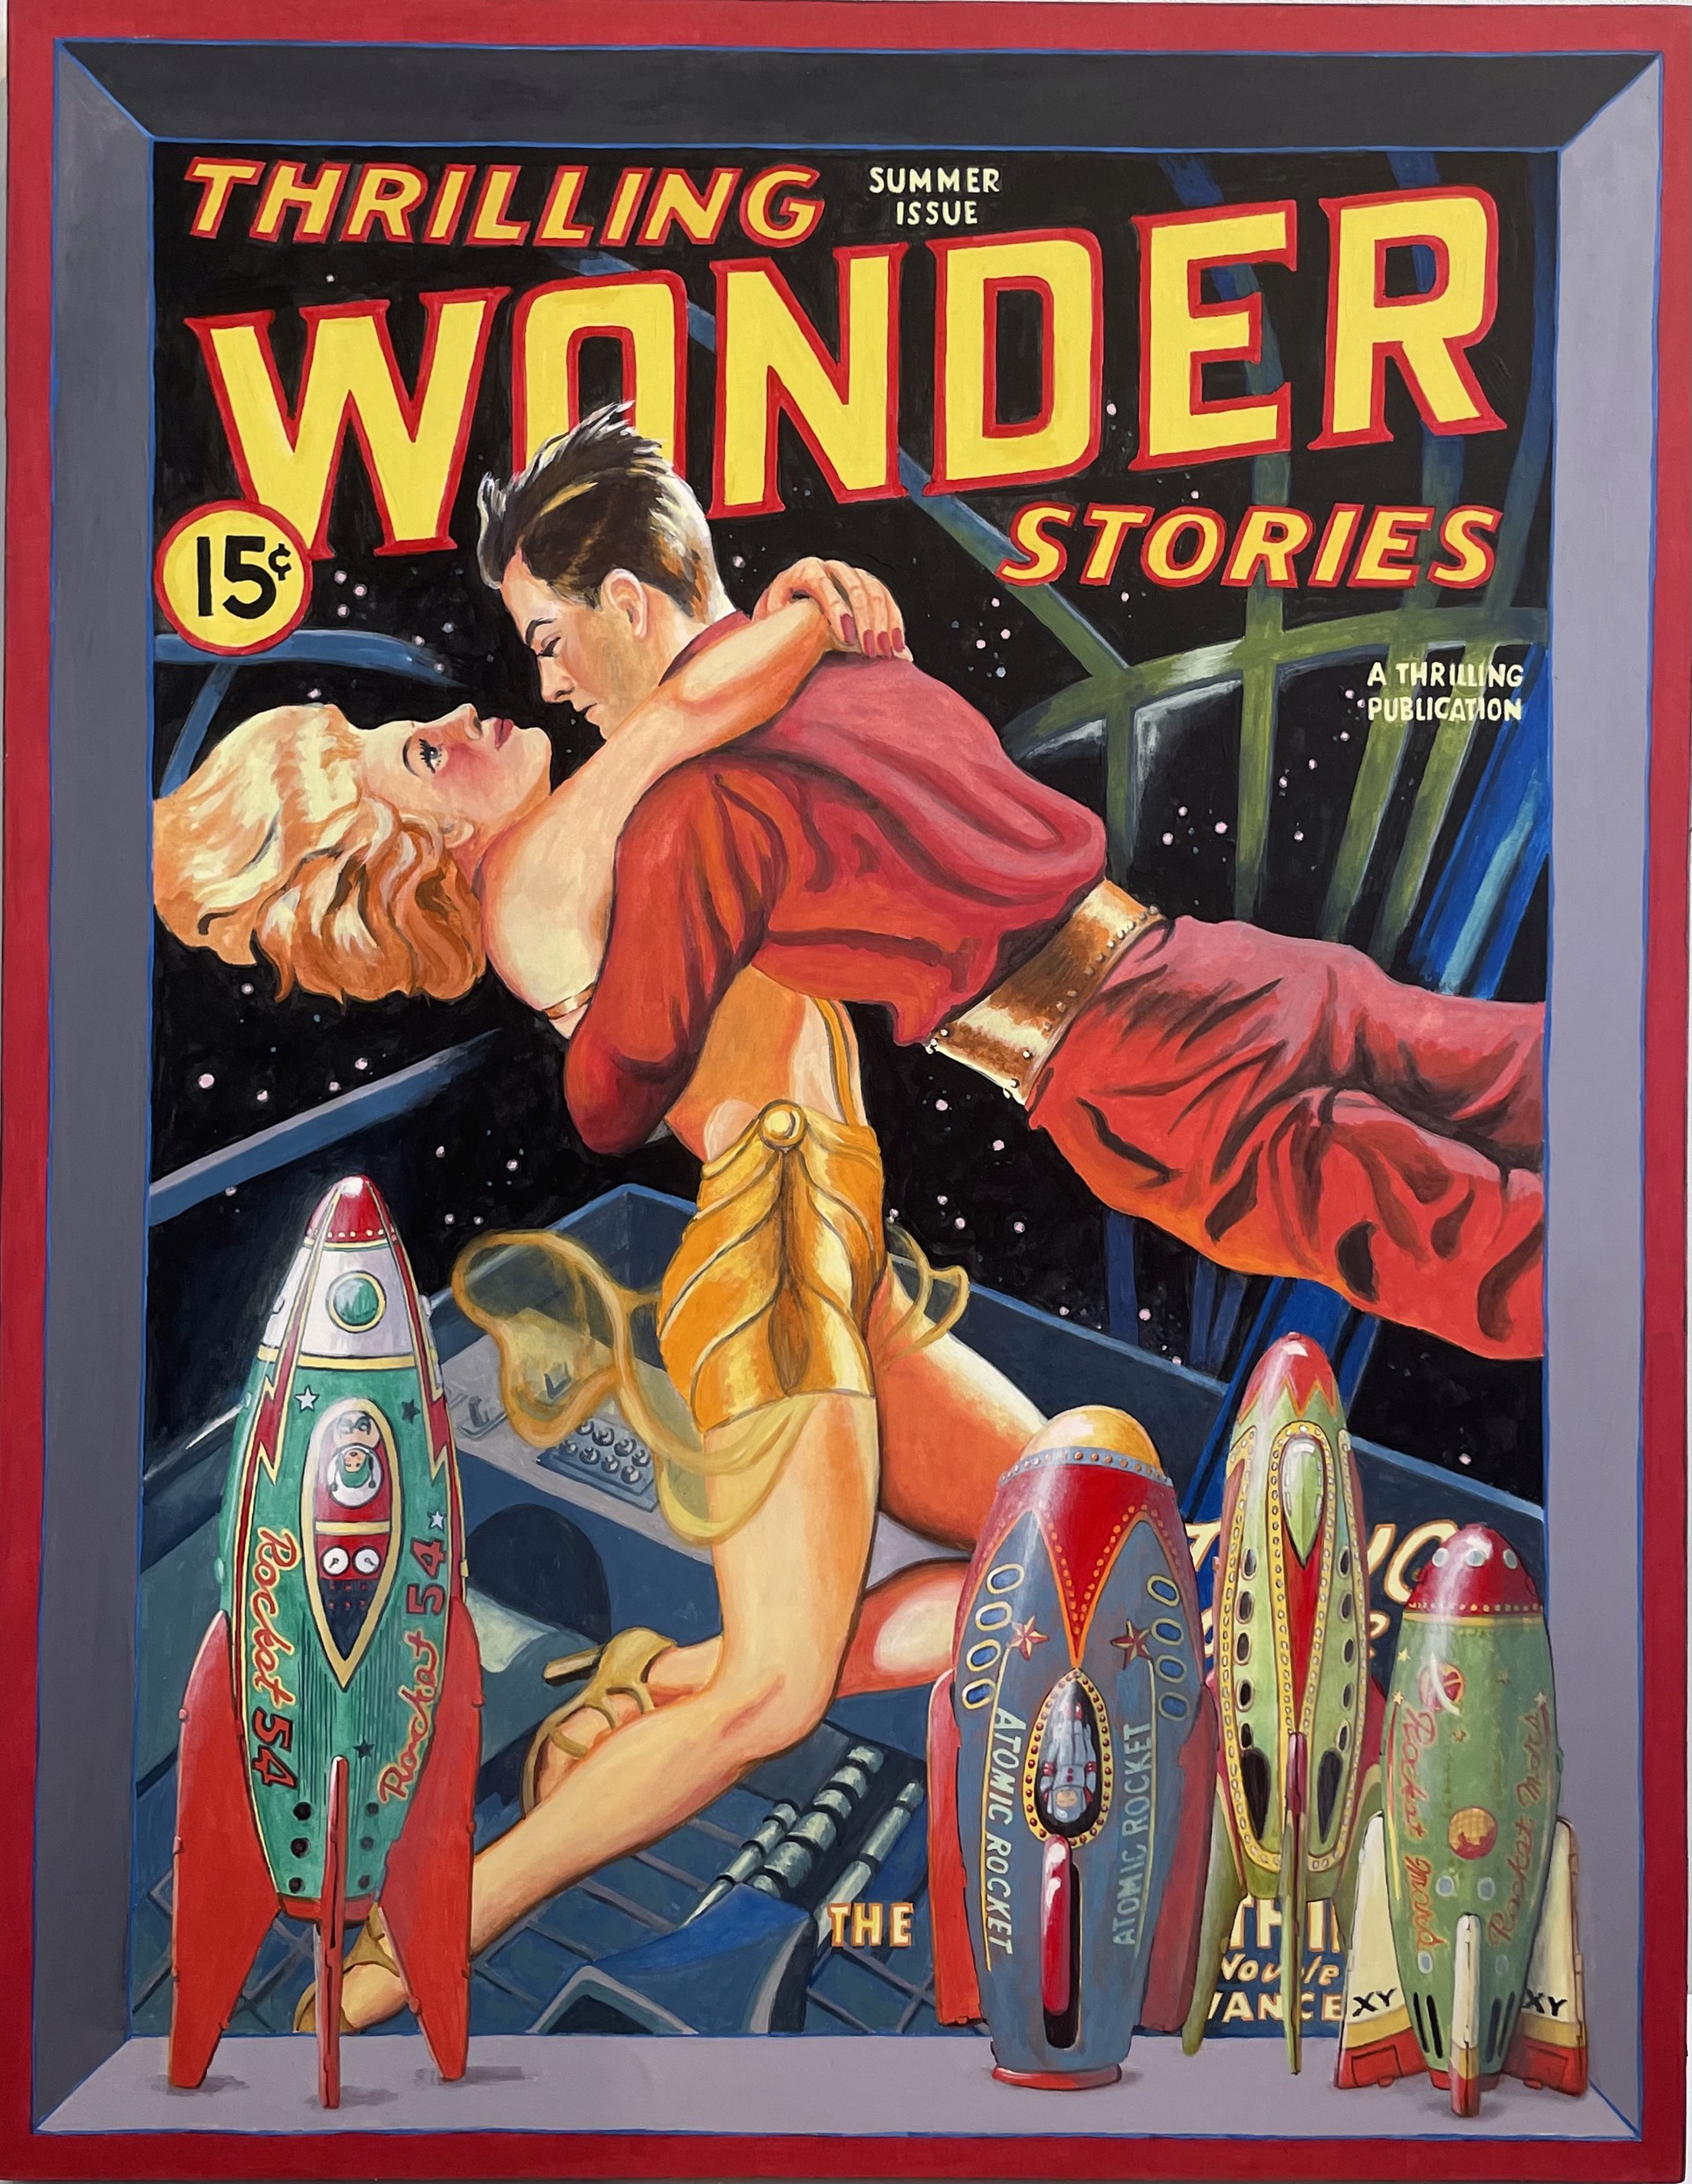 Launch Pad (Thrilling Wonder Stories) by Ralph Allen Massey